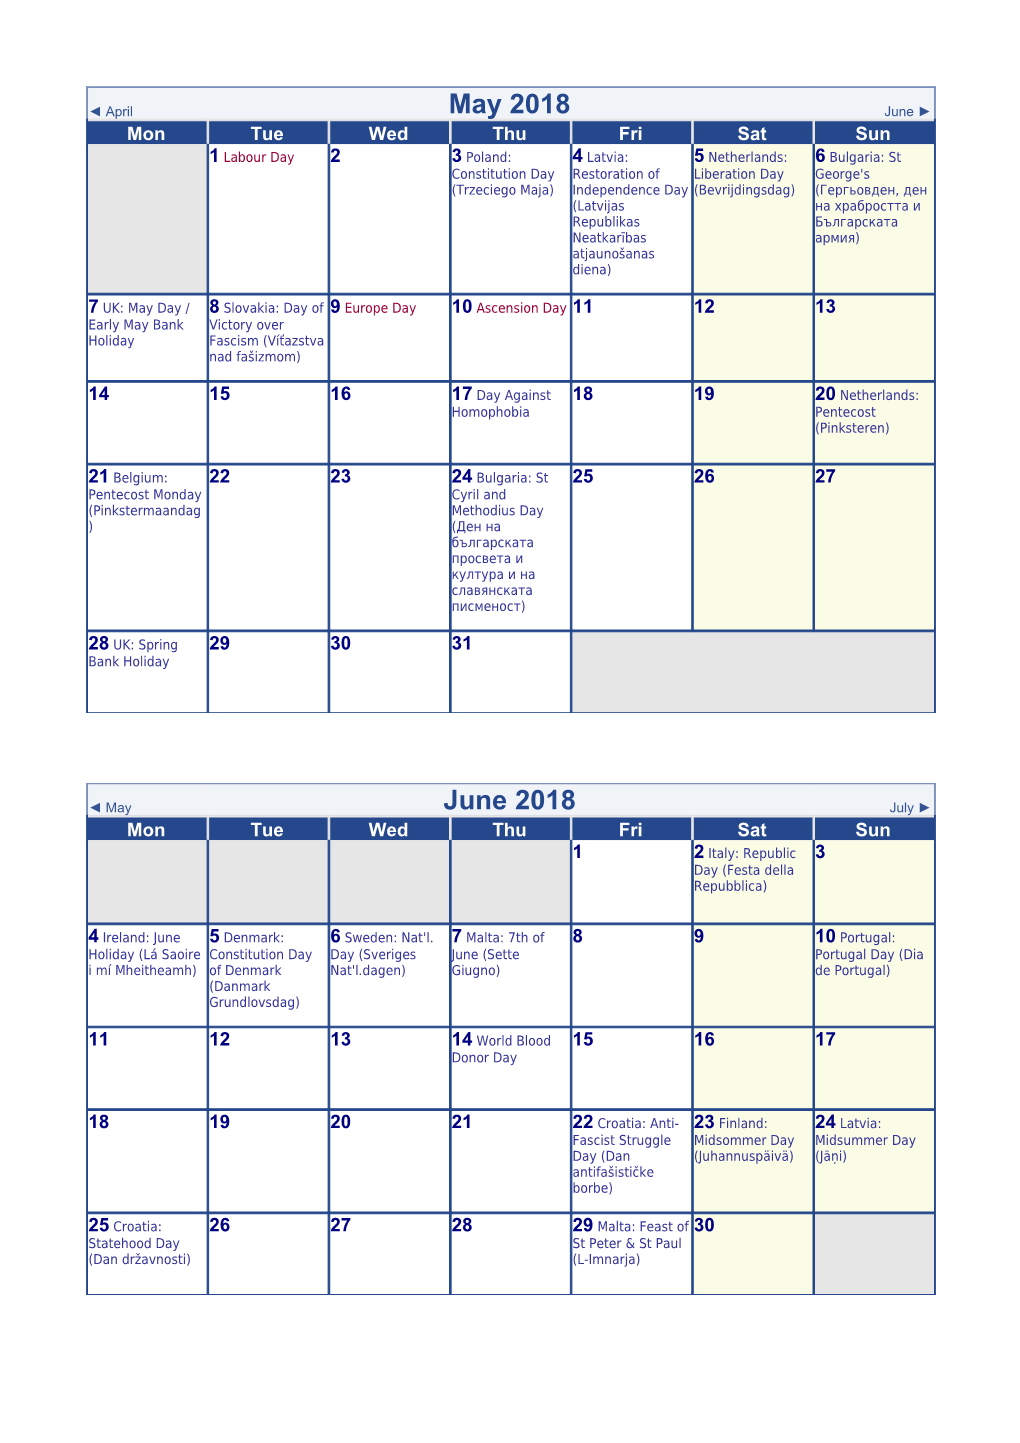 June 2018 EU Calendar with Holidays